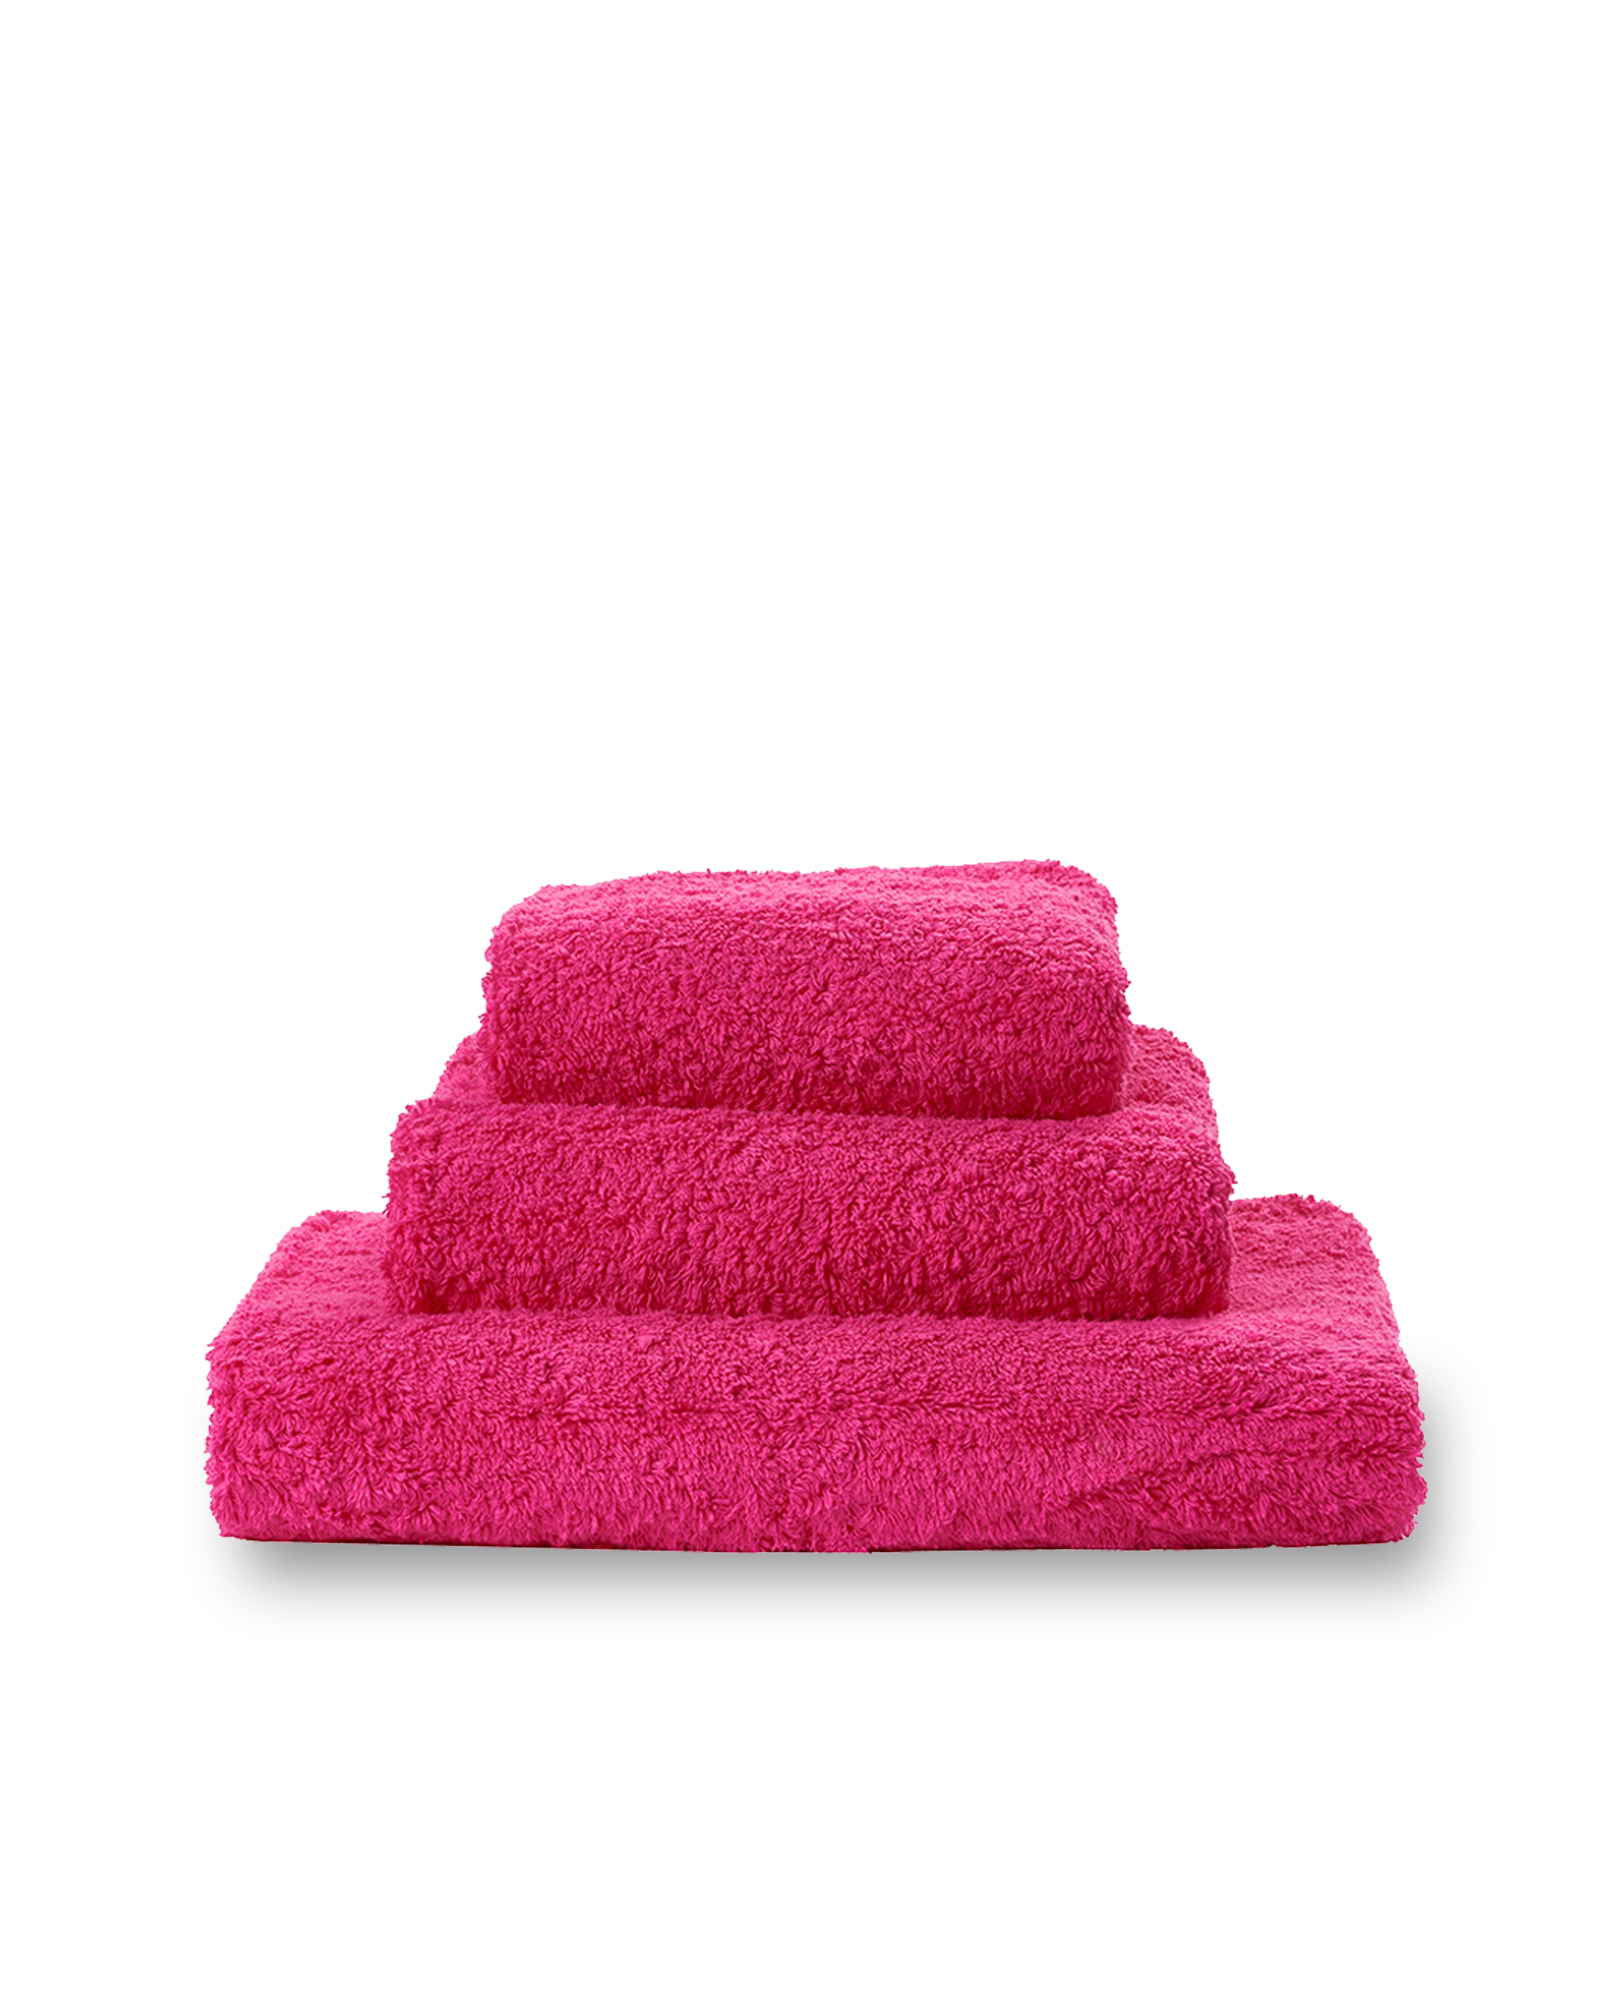 Abyss & Habidecor - Gant de toilette SUPER PILE 570 Happy pink - 17x22 cm - 570 Happy pink 